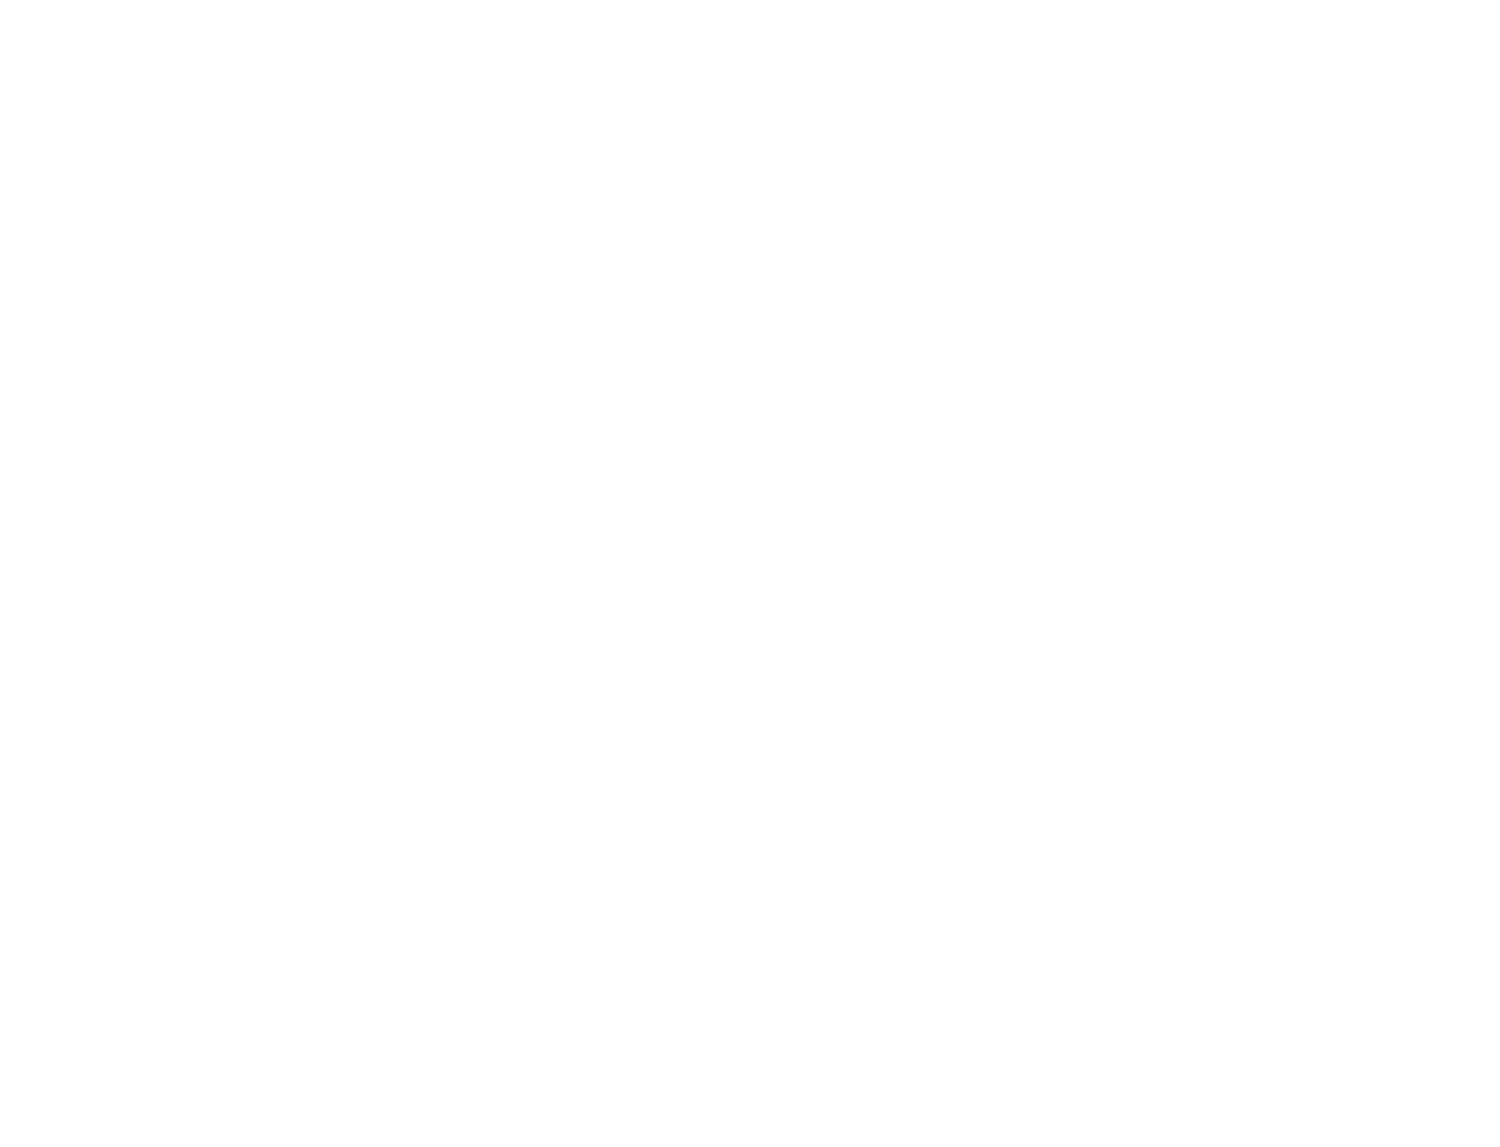 NICHOLAS DEMETRIS NICOLA